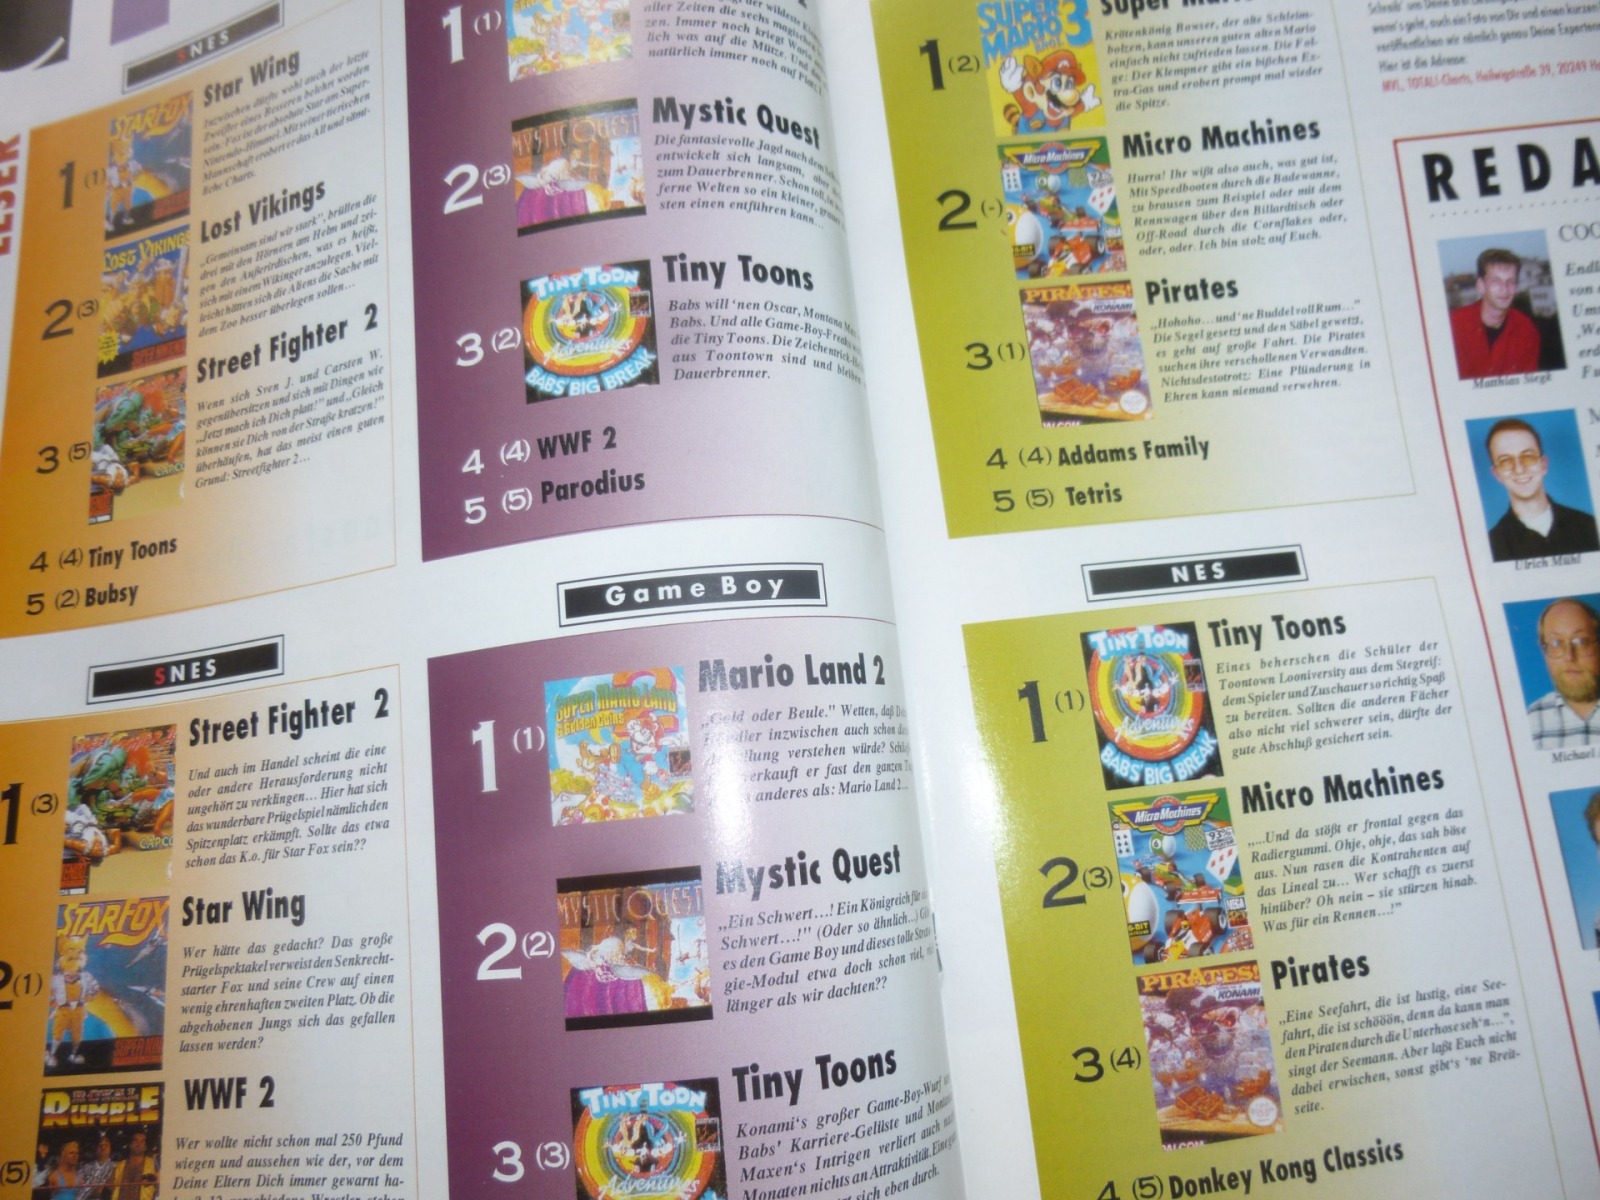 TOTAL Das unabhängige Magazin - 100% Nintendo - Ausgabe 10/93 1993 26